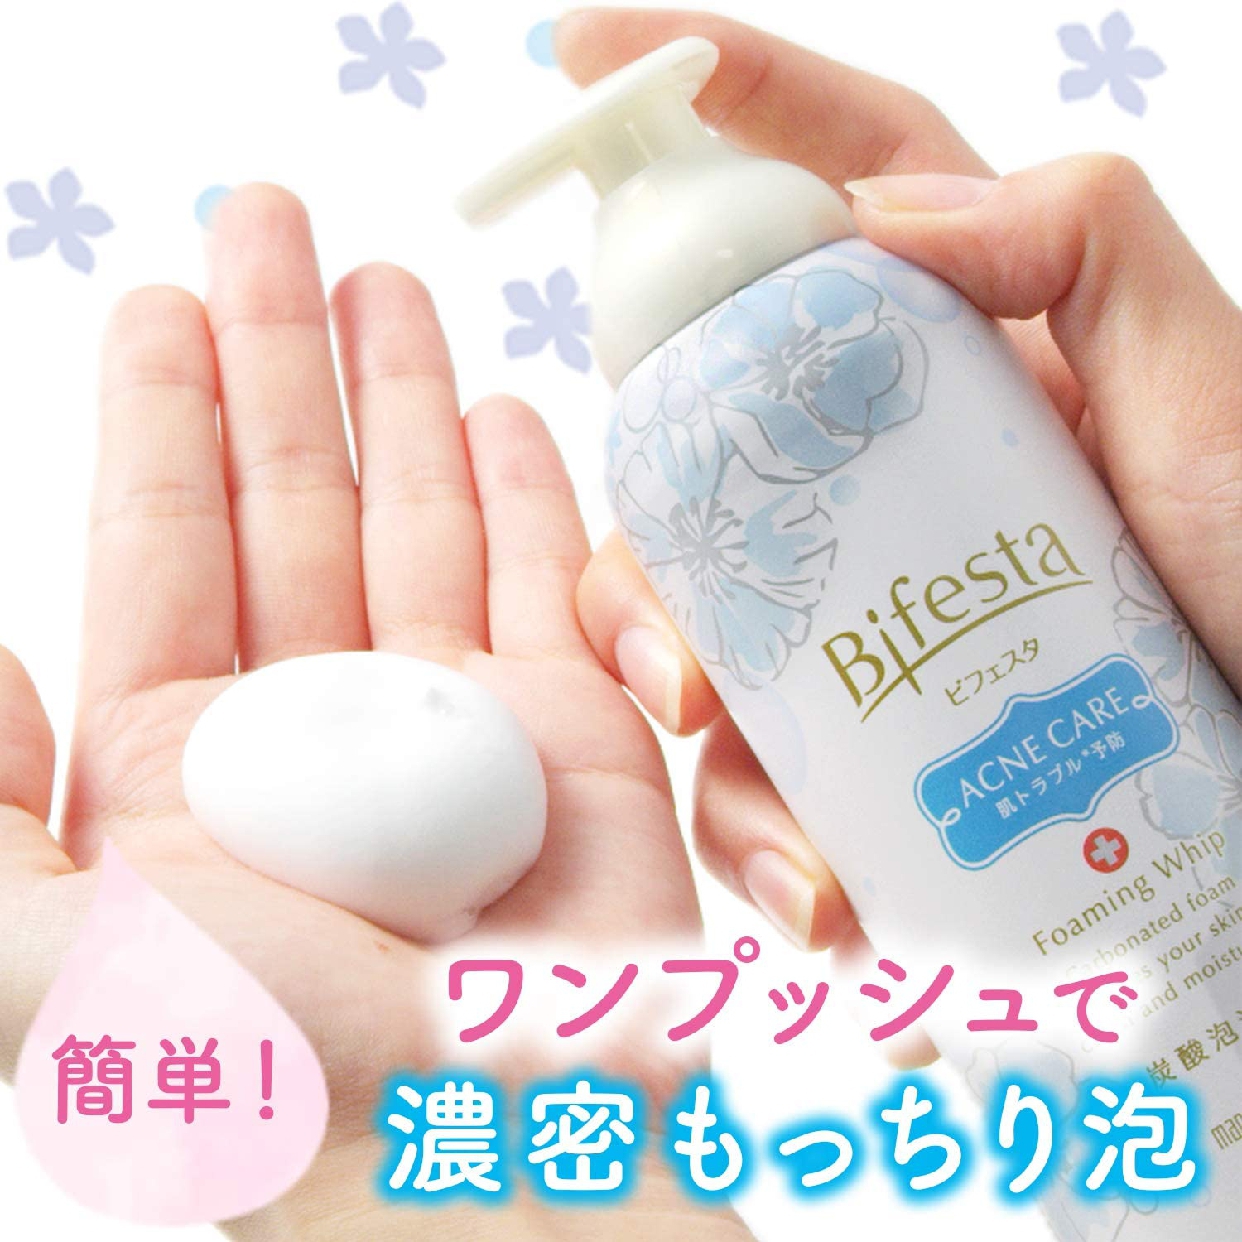 Bifesta(ビフェスタ) 泡洗顔 コントロールケアの商品画像サムネ8 